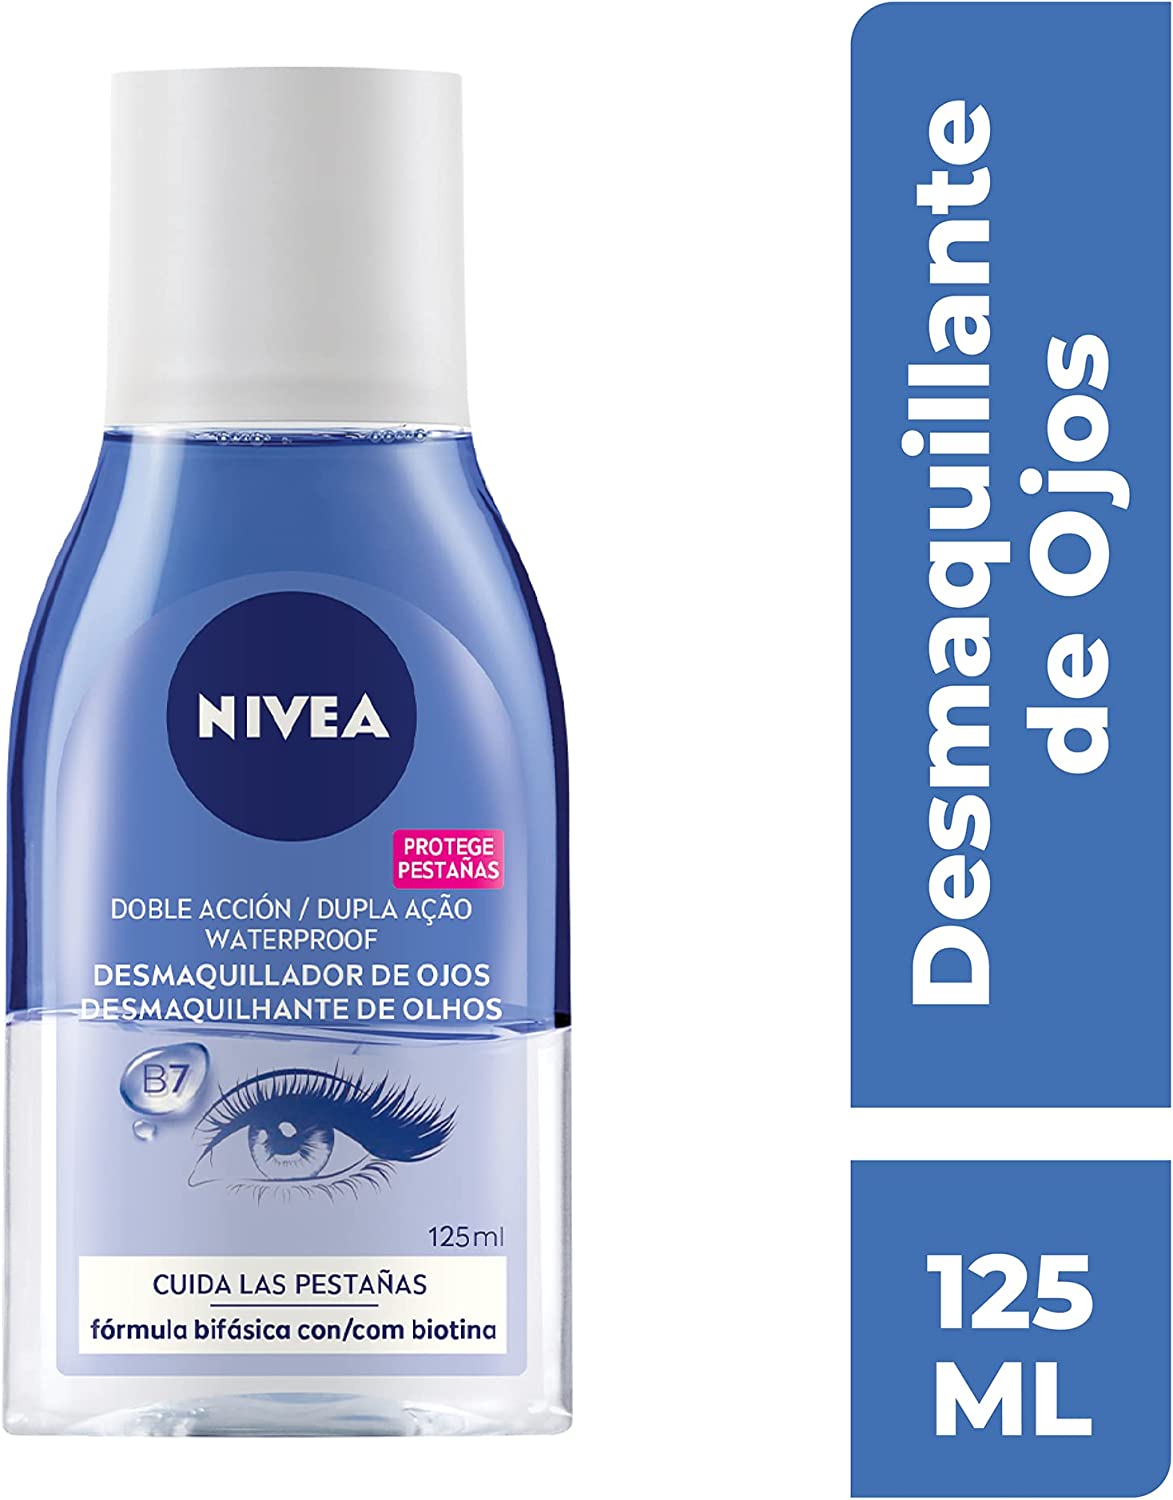 NIVEA Desmaquillador de Ojos Doble Acción (1 x 125 ml), líquido